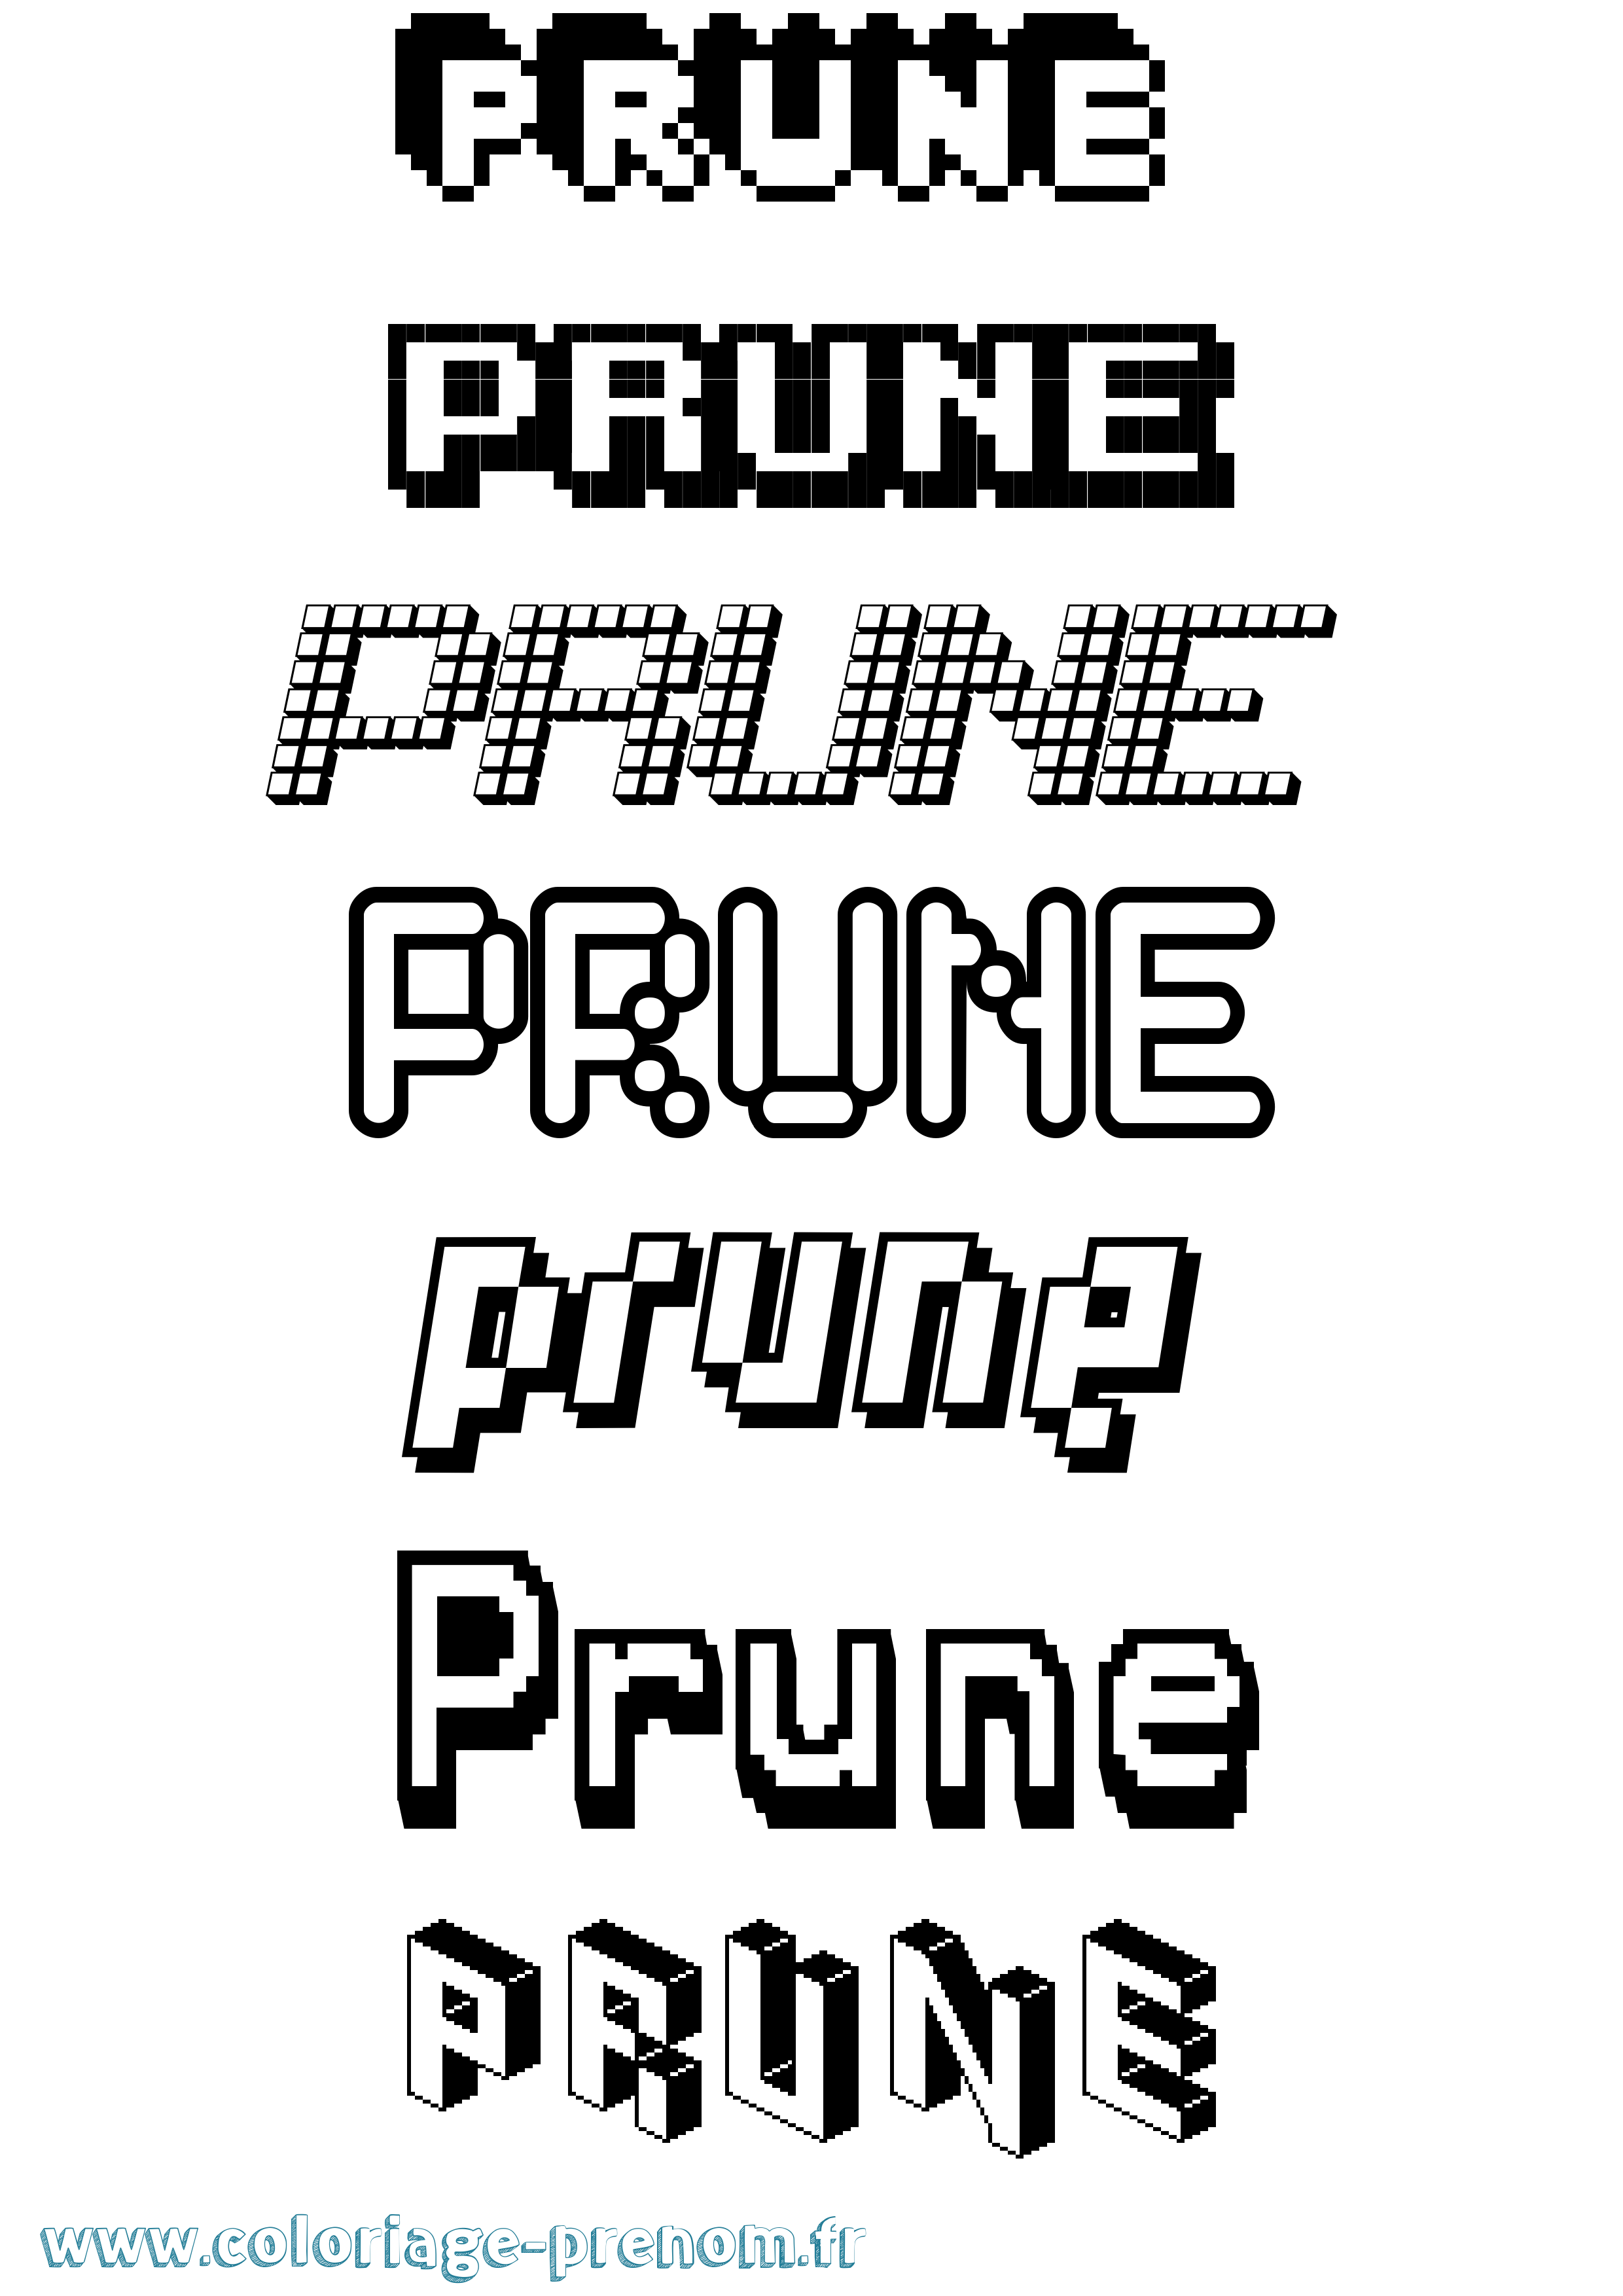 Coloriage prénom Prune